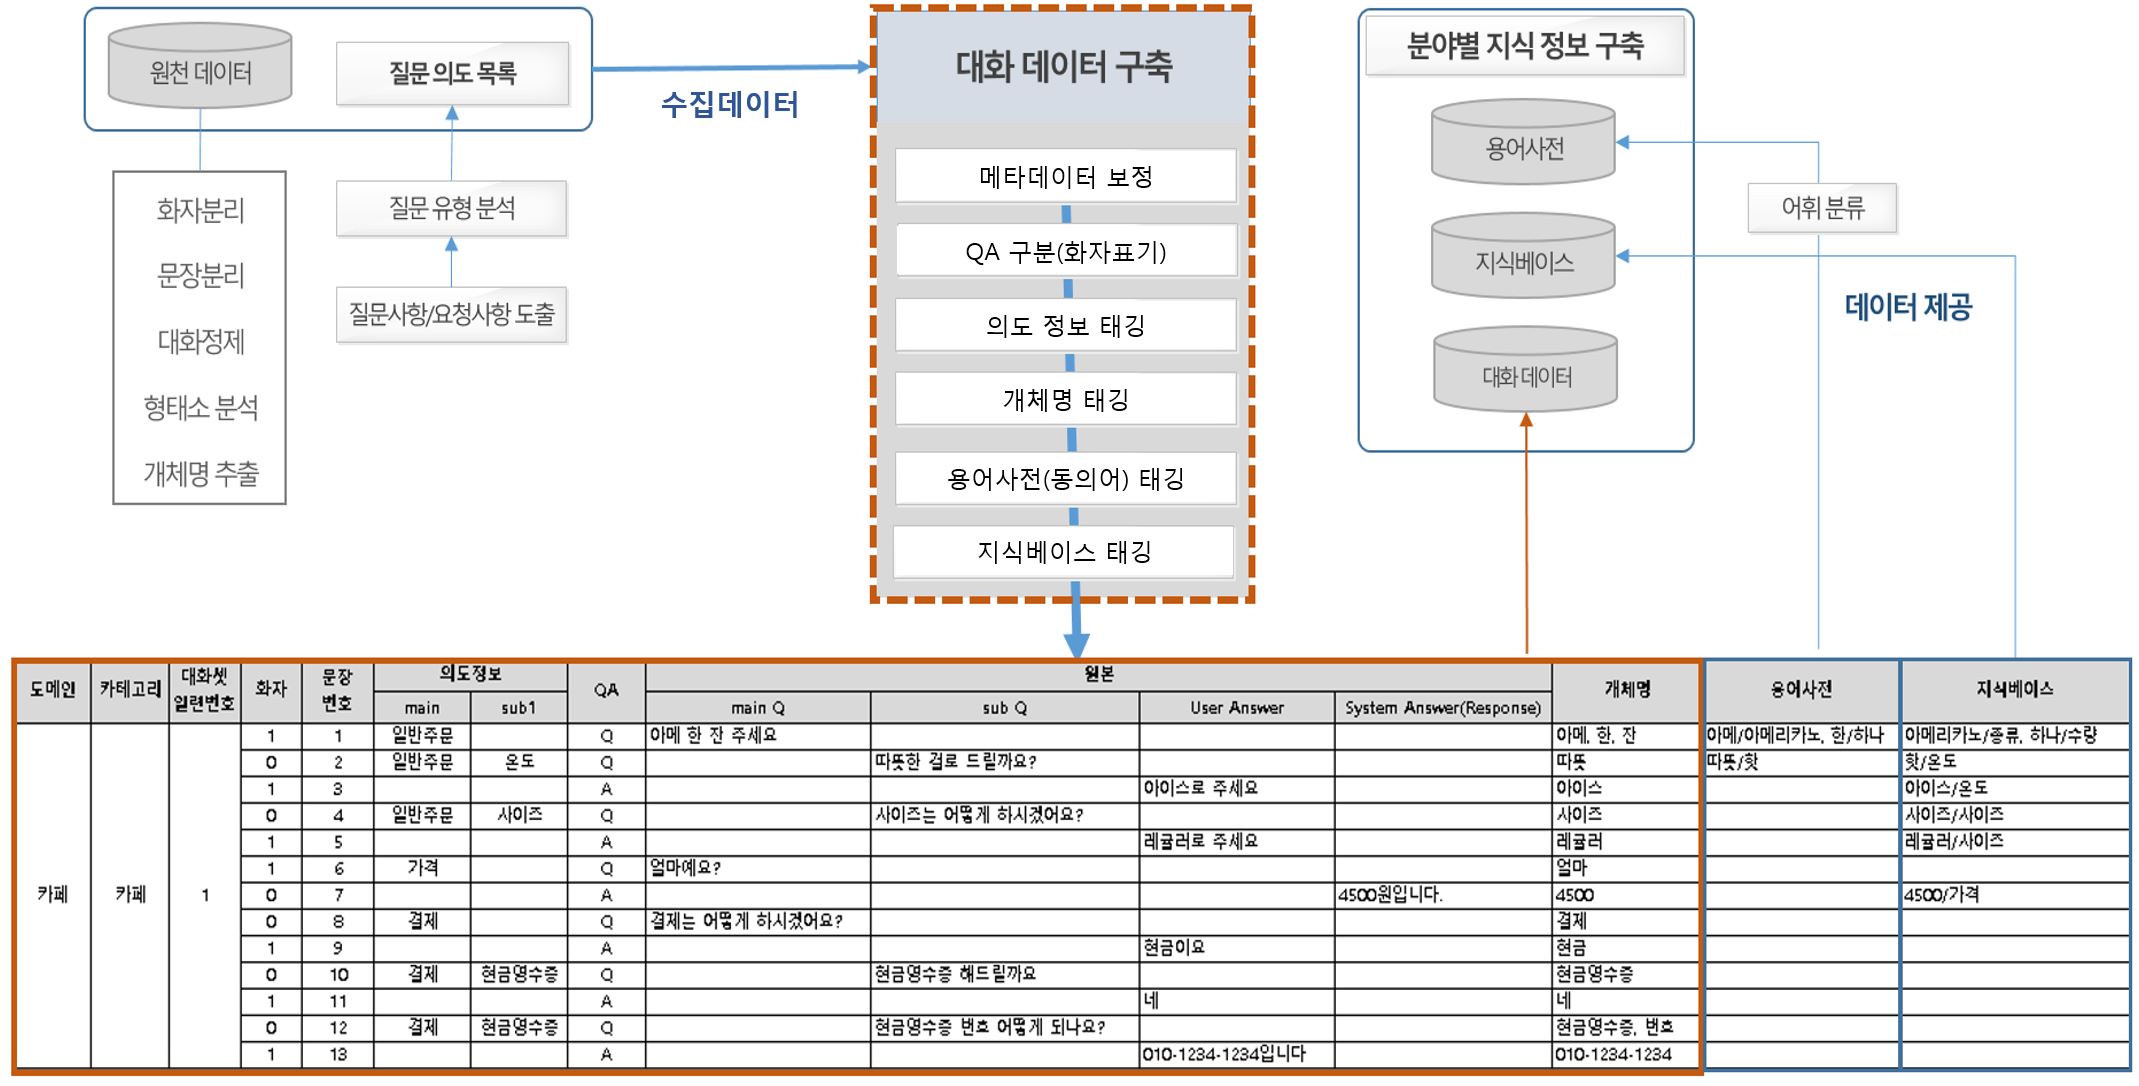 한국어 대화-데이터 구조-한국어 대화데이터 분야 구조 이미지 예시